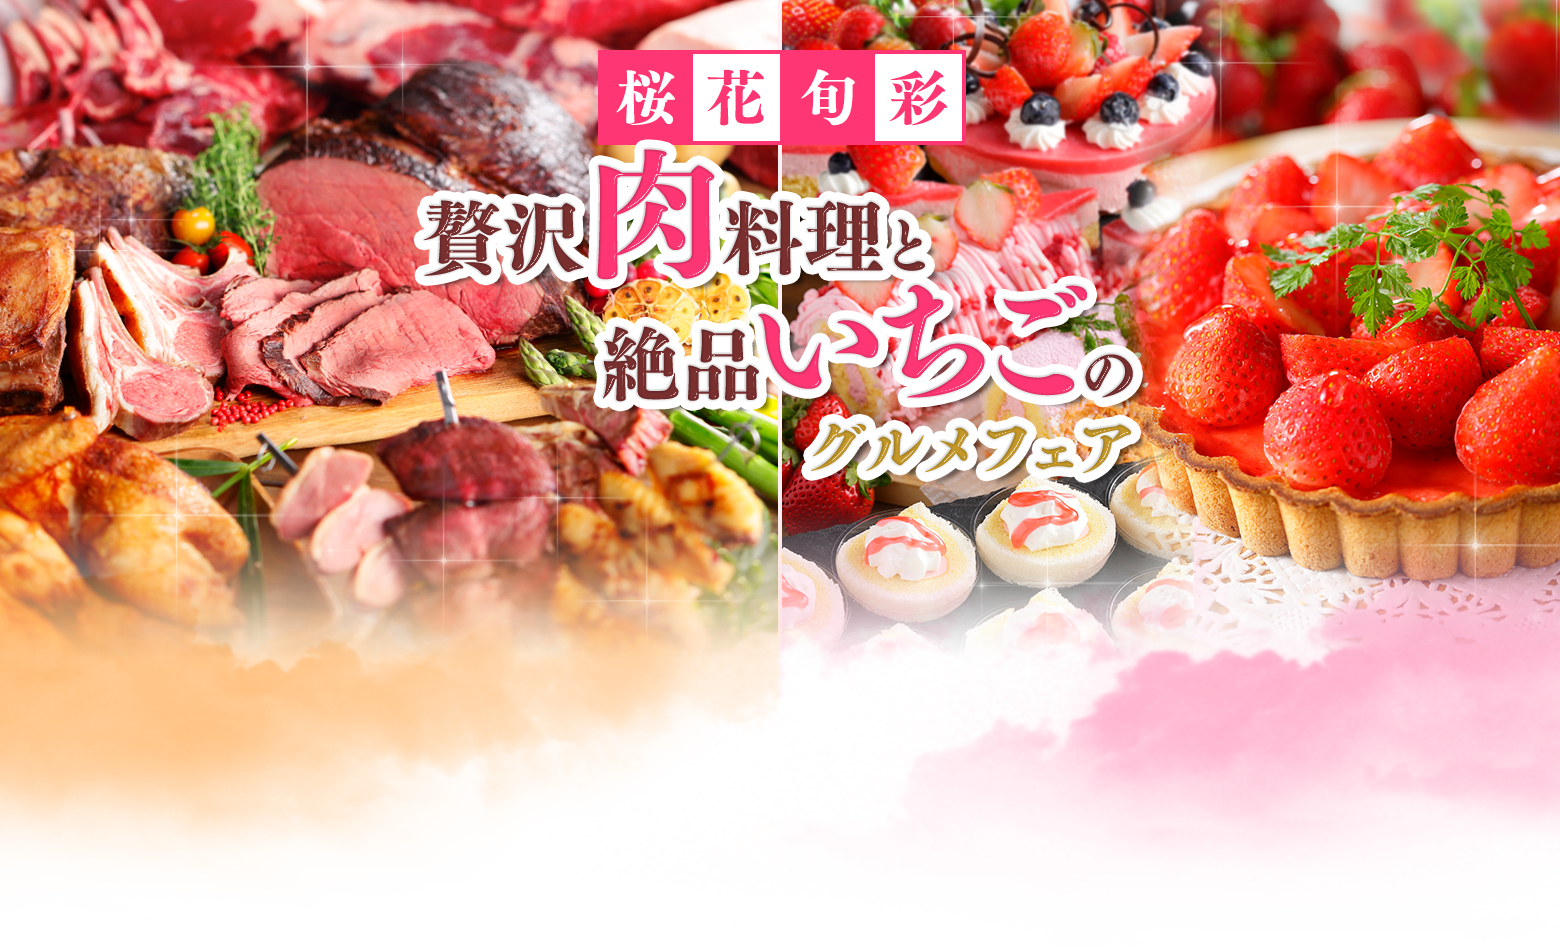 桜花旬彩 贅沢肉料理と絶品いちごのグルメフェア